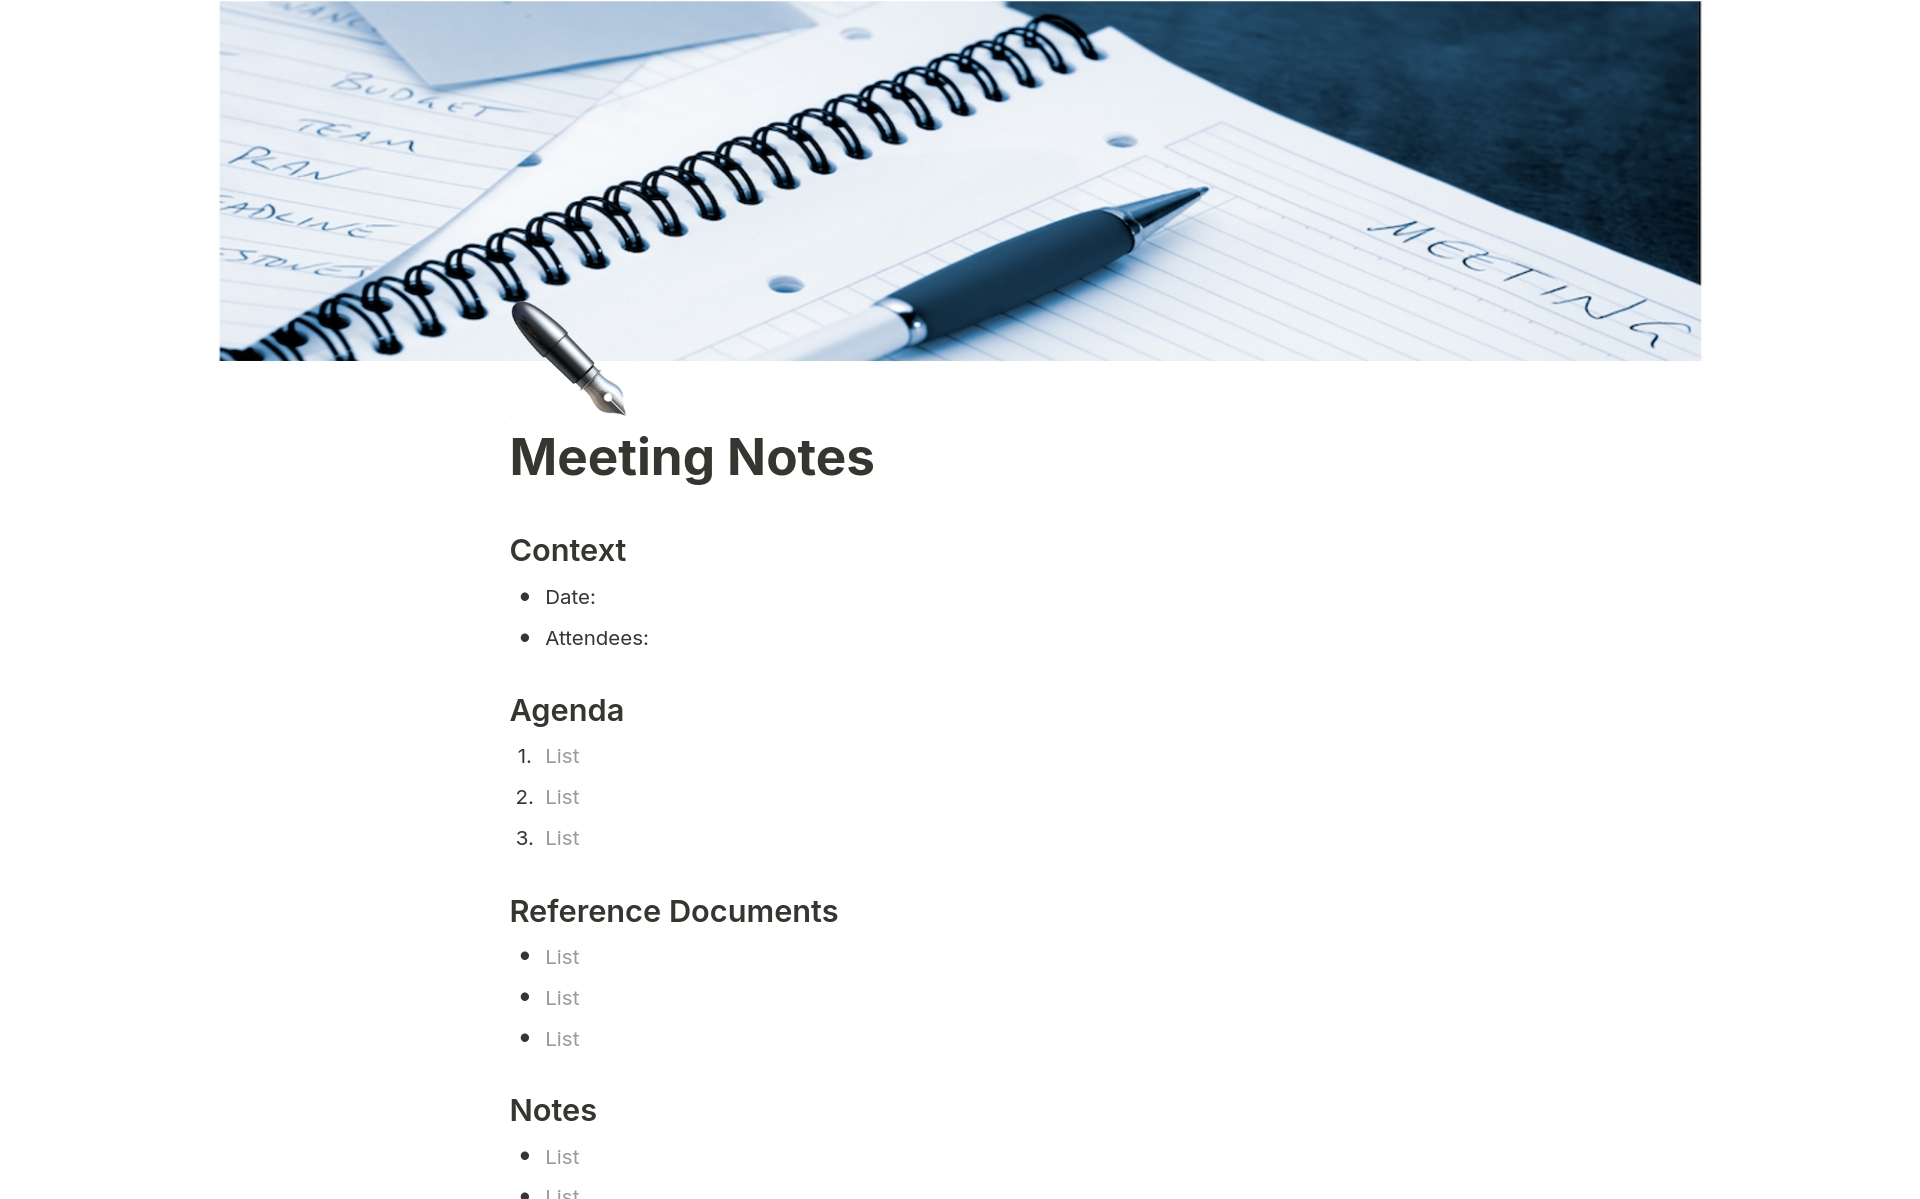 Uma prévia do modelo para Simple Meeting Notes